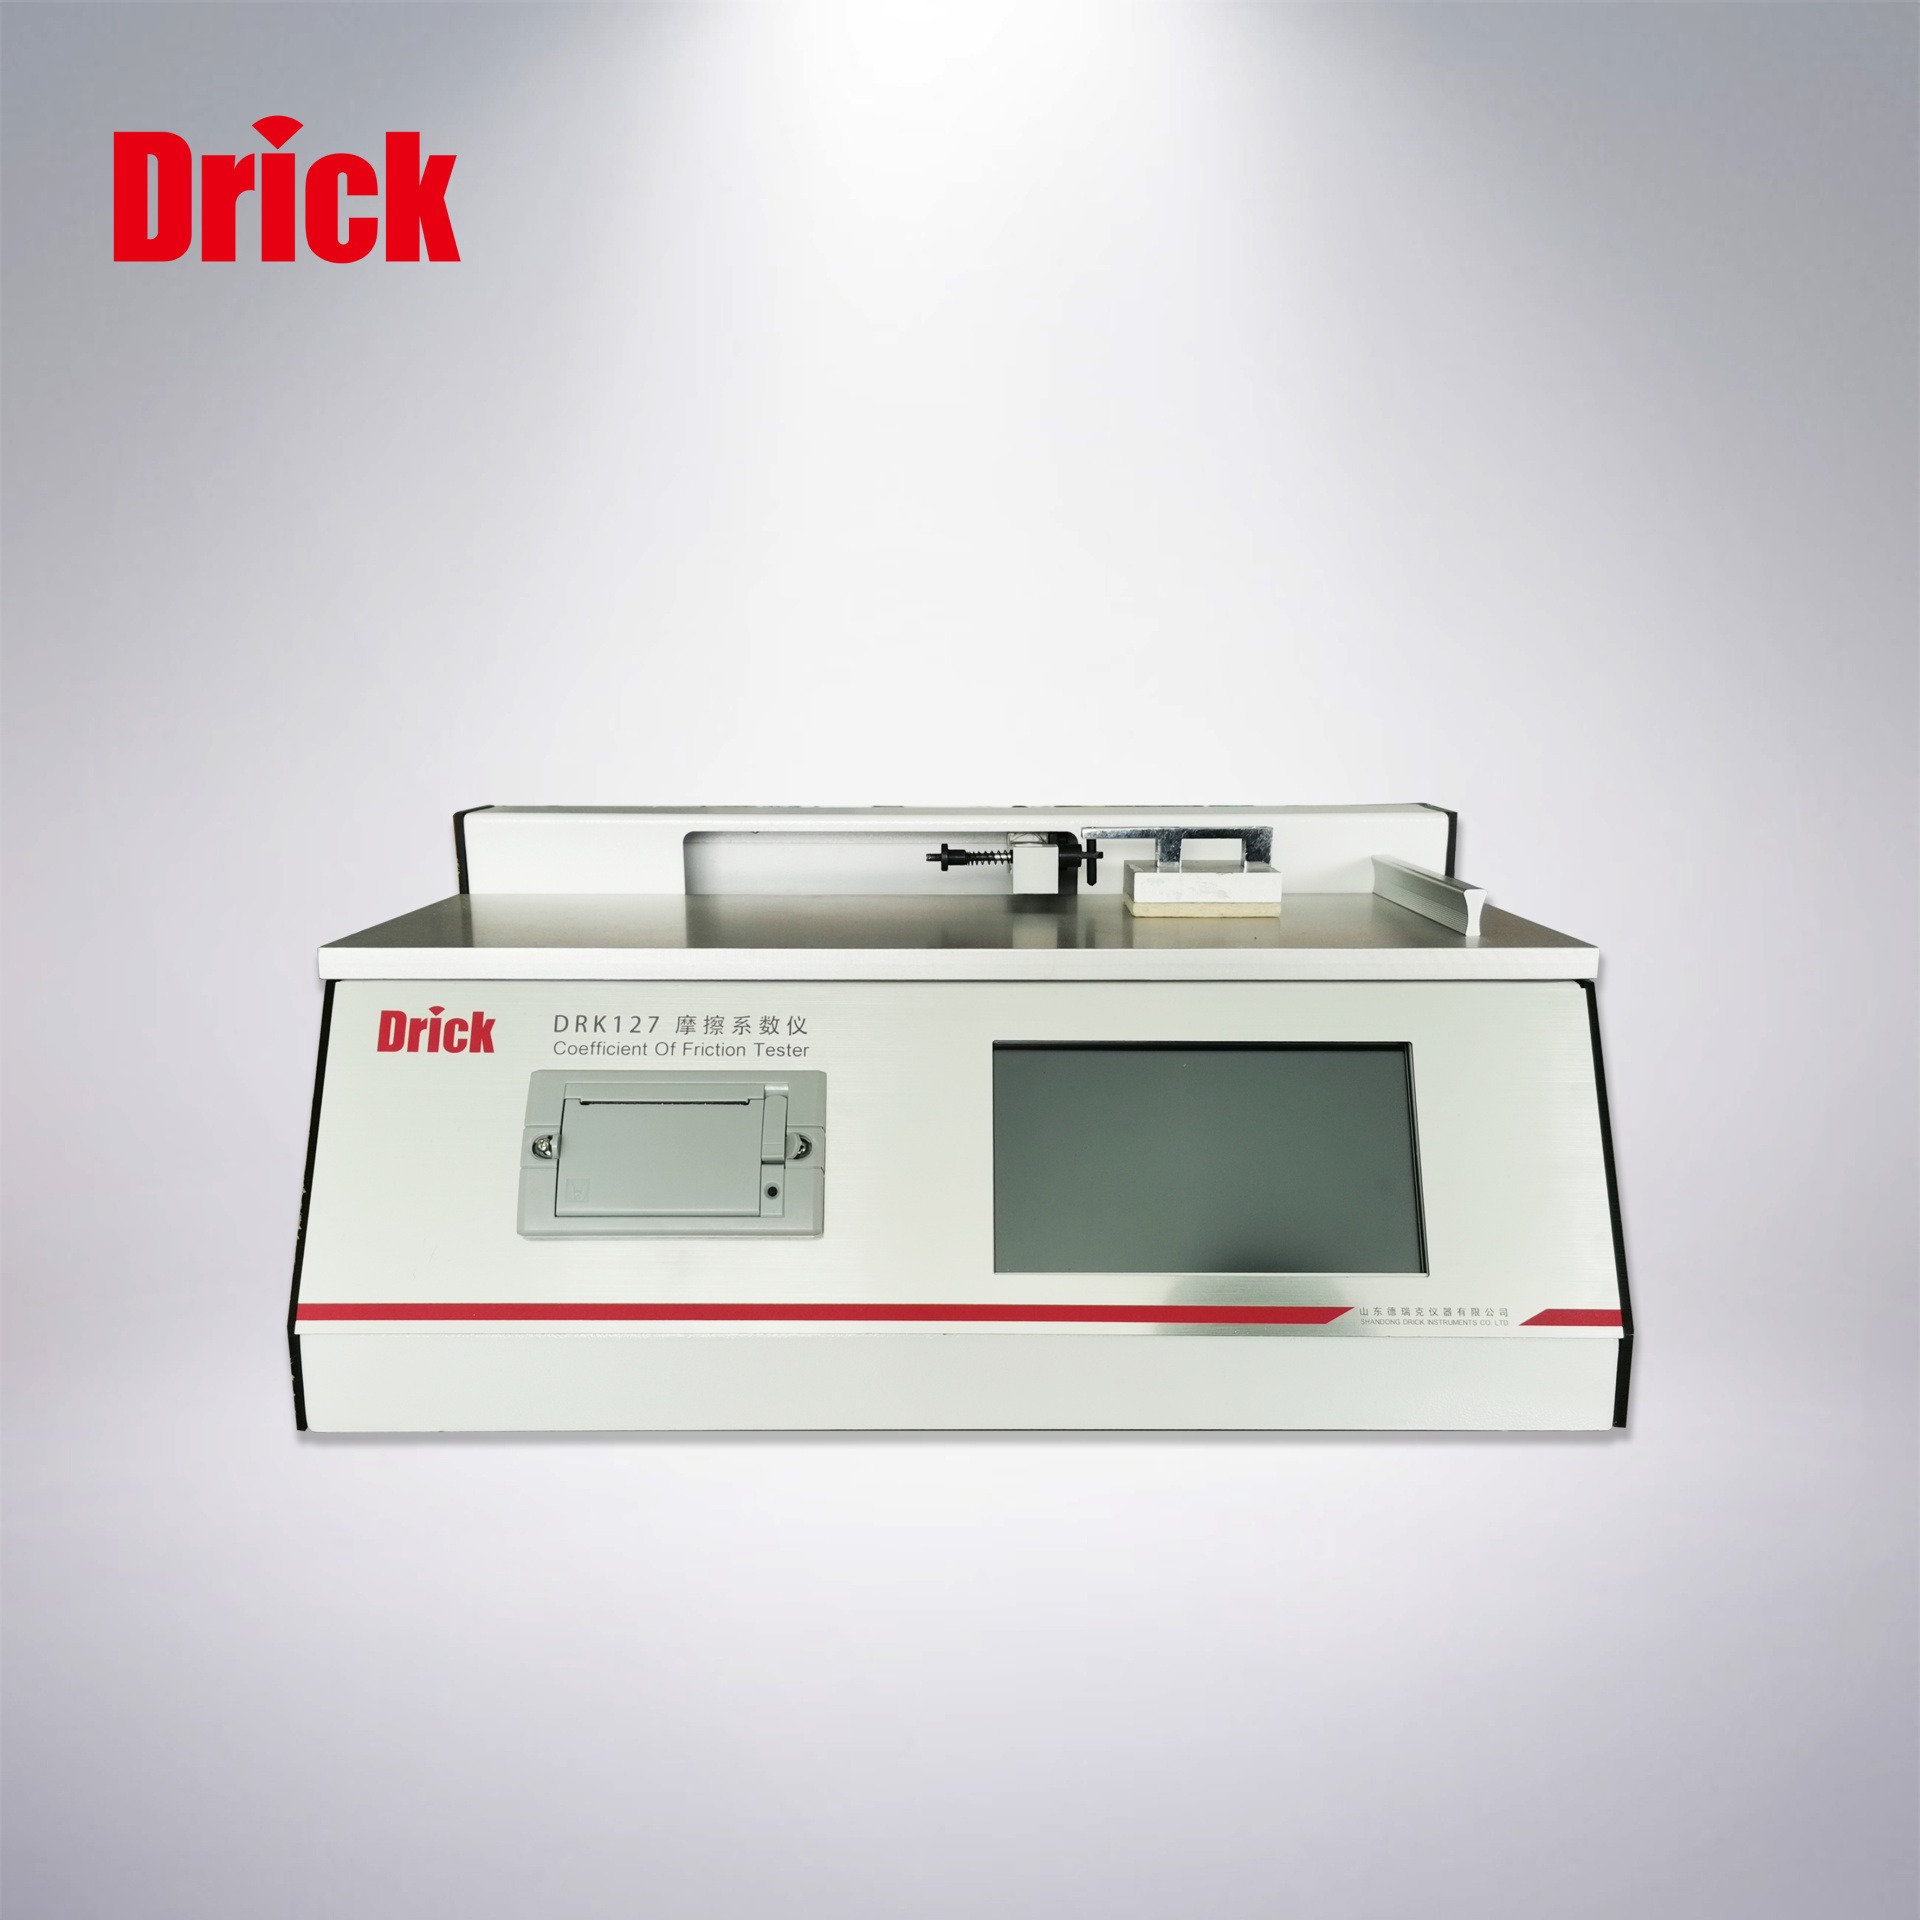 DRK127塑料薄膜触控彩屏摩擦系数仪德瑞克drick橡胶纸张纸板织物摩擦系数检测